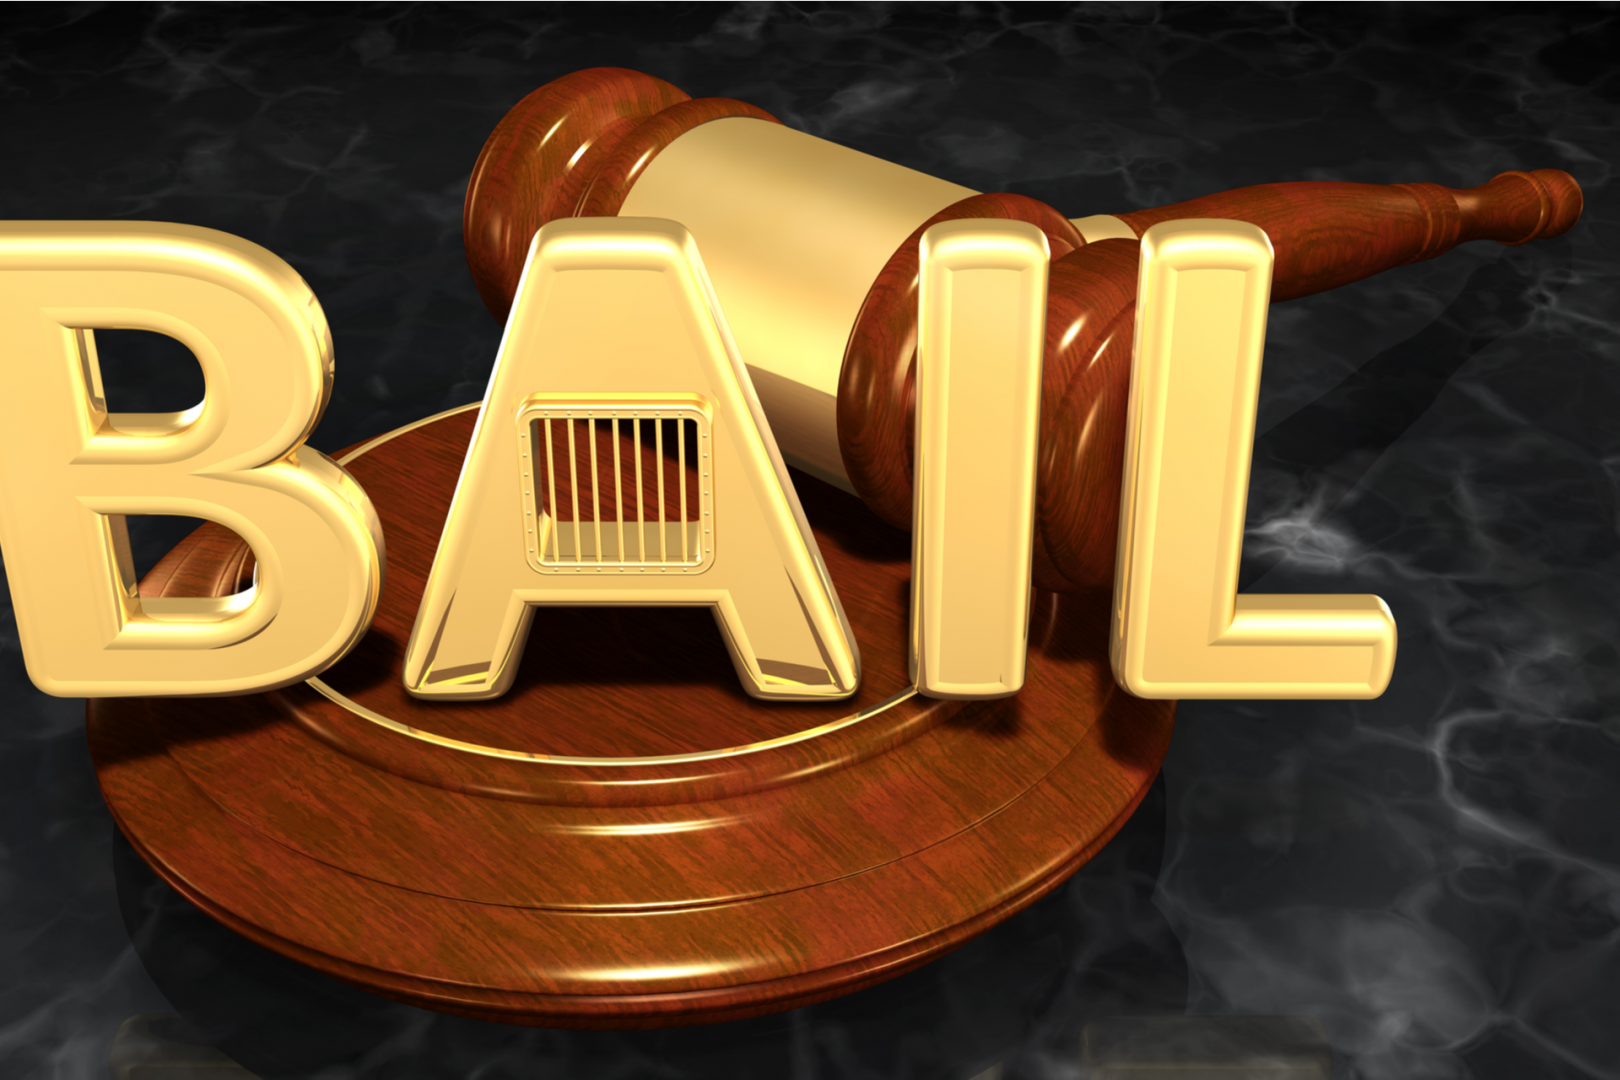 Bail Law Concept 3D Illustration